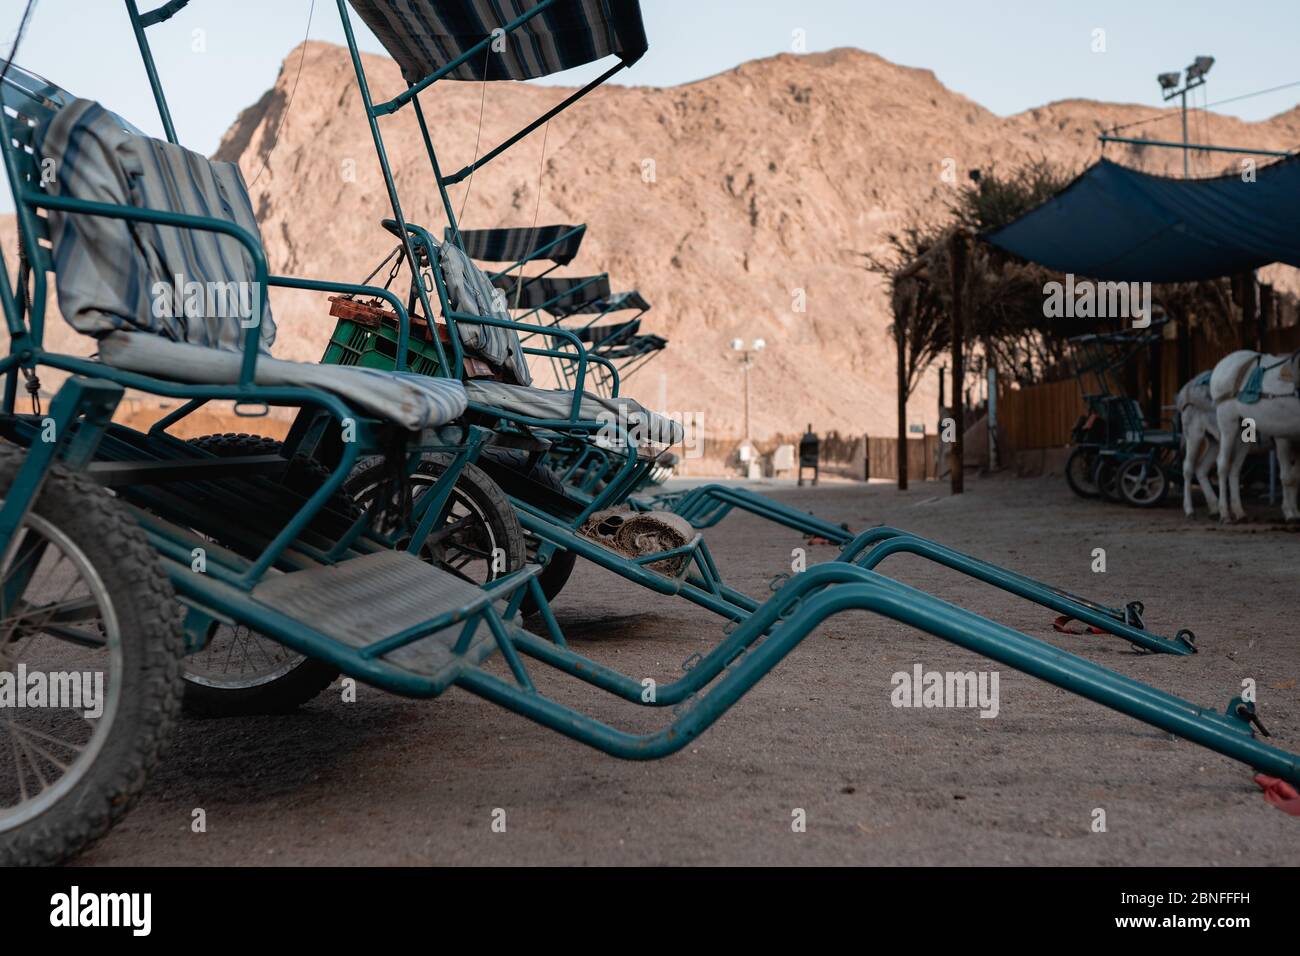 Carros de metal cerca de un establo y las tiendas en un desierto rodeado de montañas Foto de stock